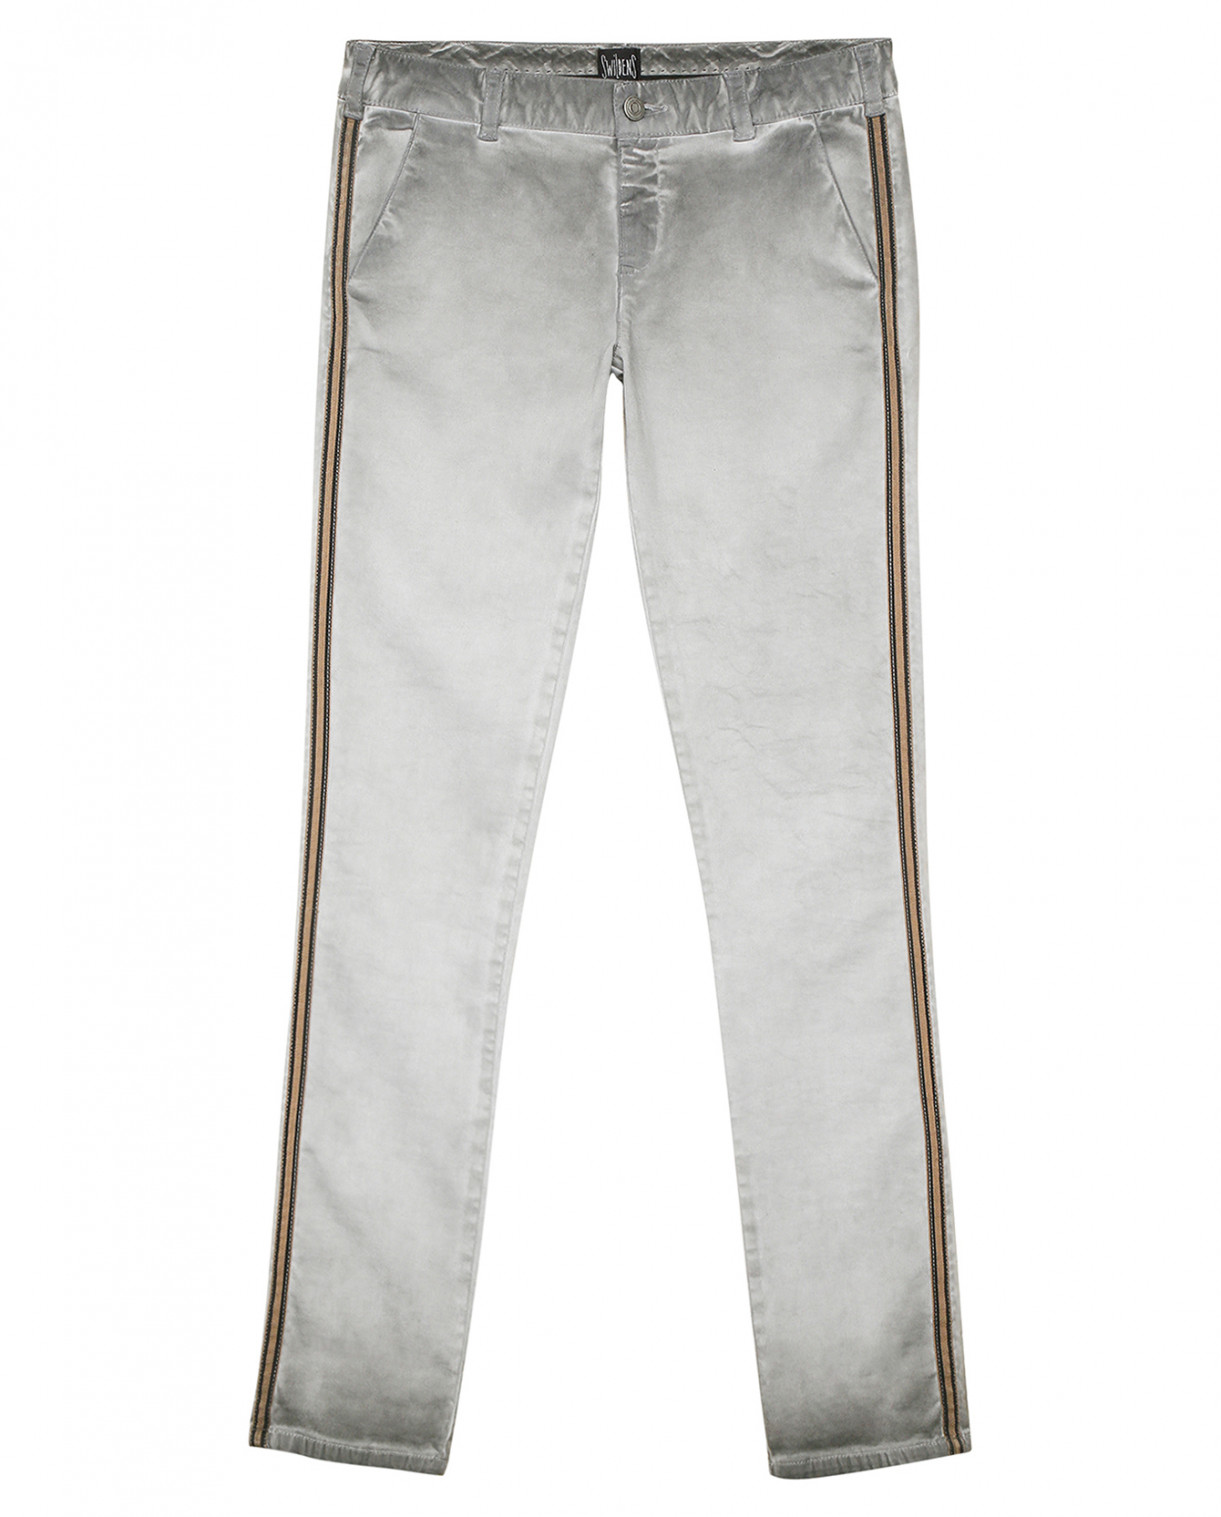 Узкие брюки декорированные тесьмой Swildens  –  Общий вид  – Цвет:  Серый